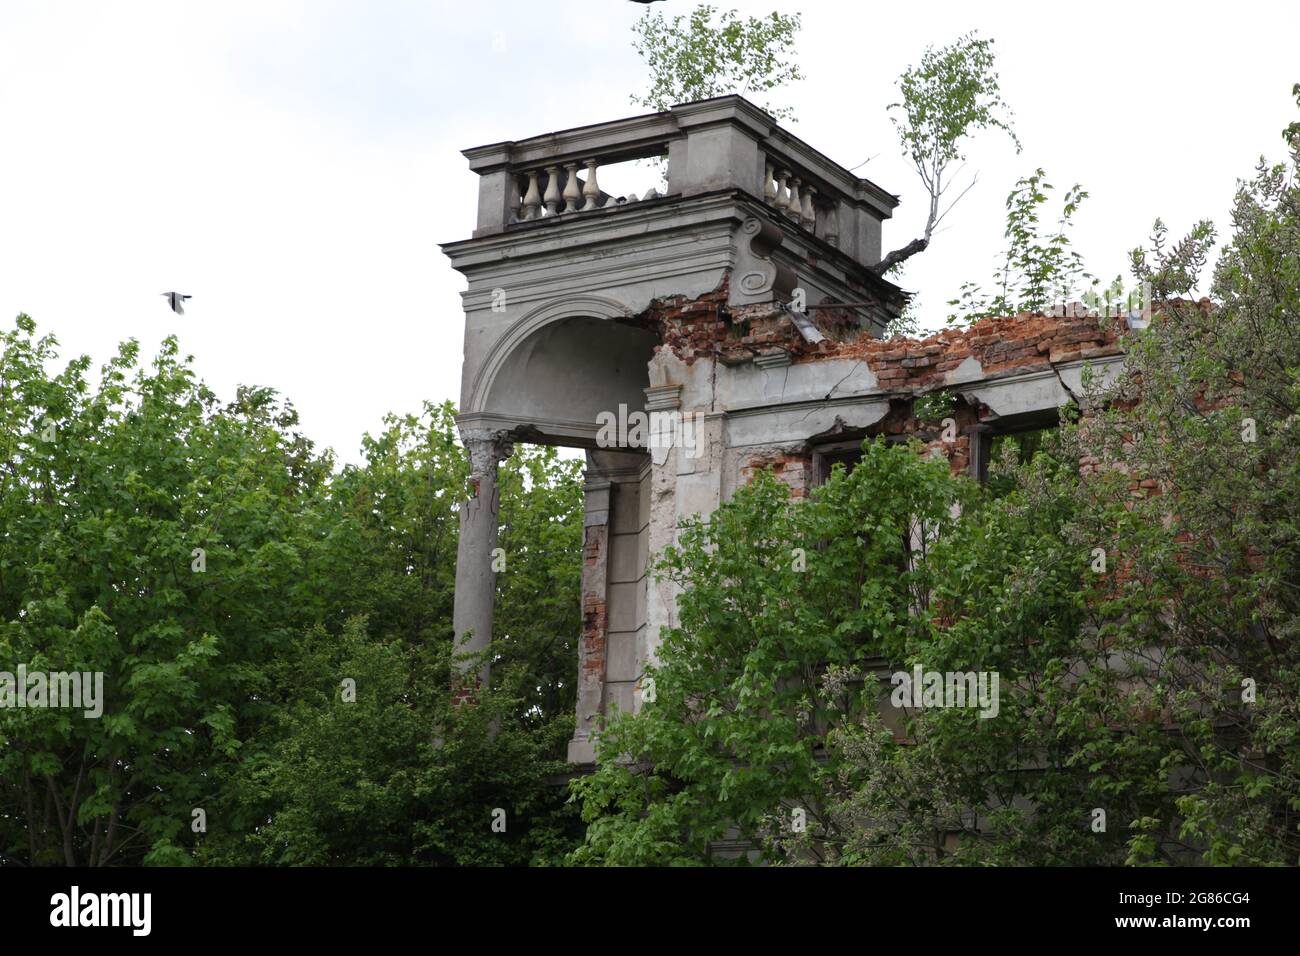 Ruinen des Karski-Palastes, Karski, Włostow, swietokrzyskie, Palast, Stockfoto